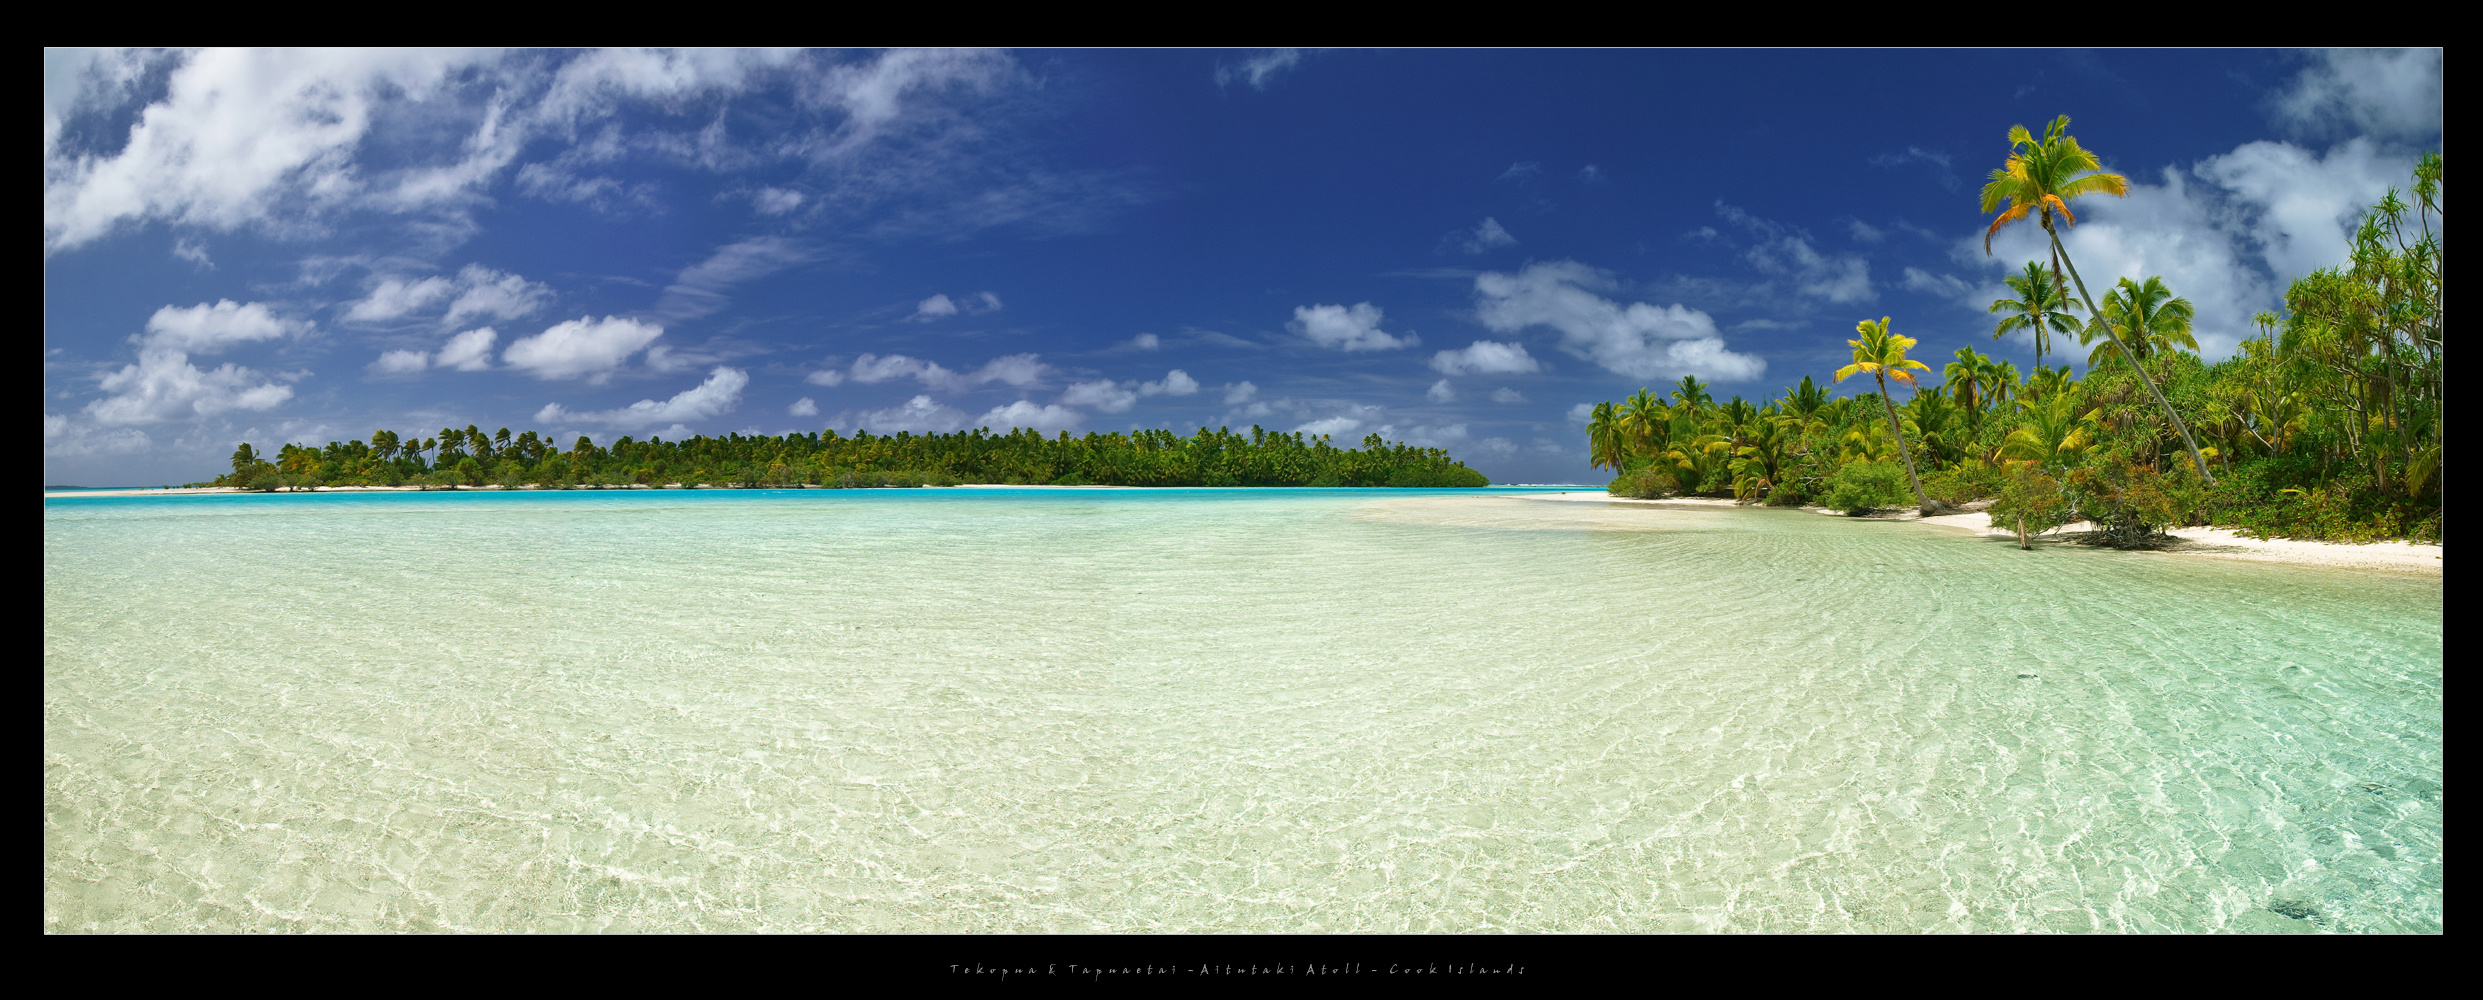 Tekopua & Tapuaetai "One Foot" Island - Aitutaki Atoll - Cook Islands 2011